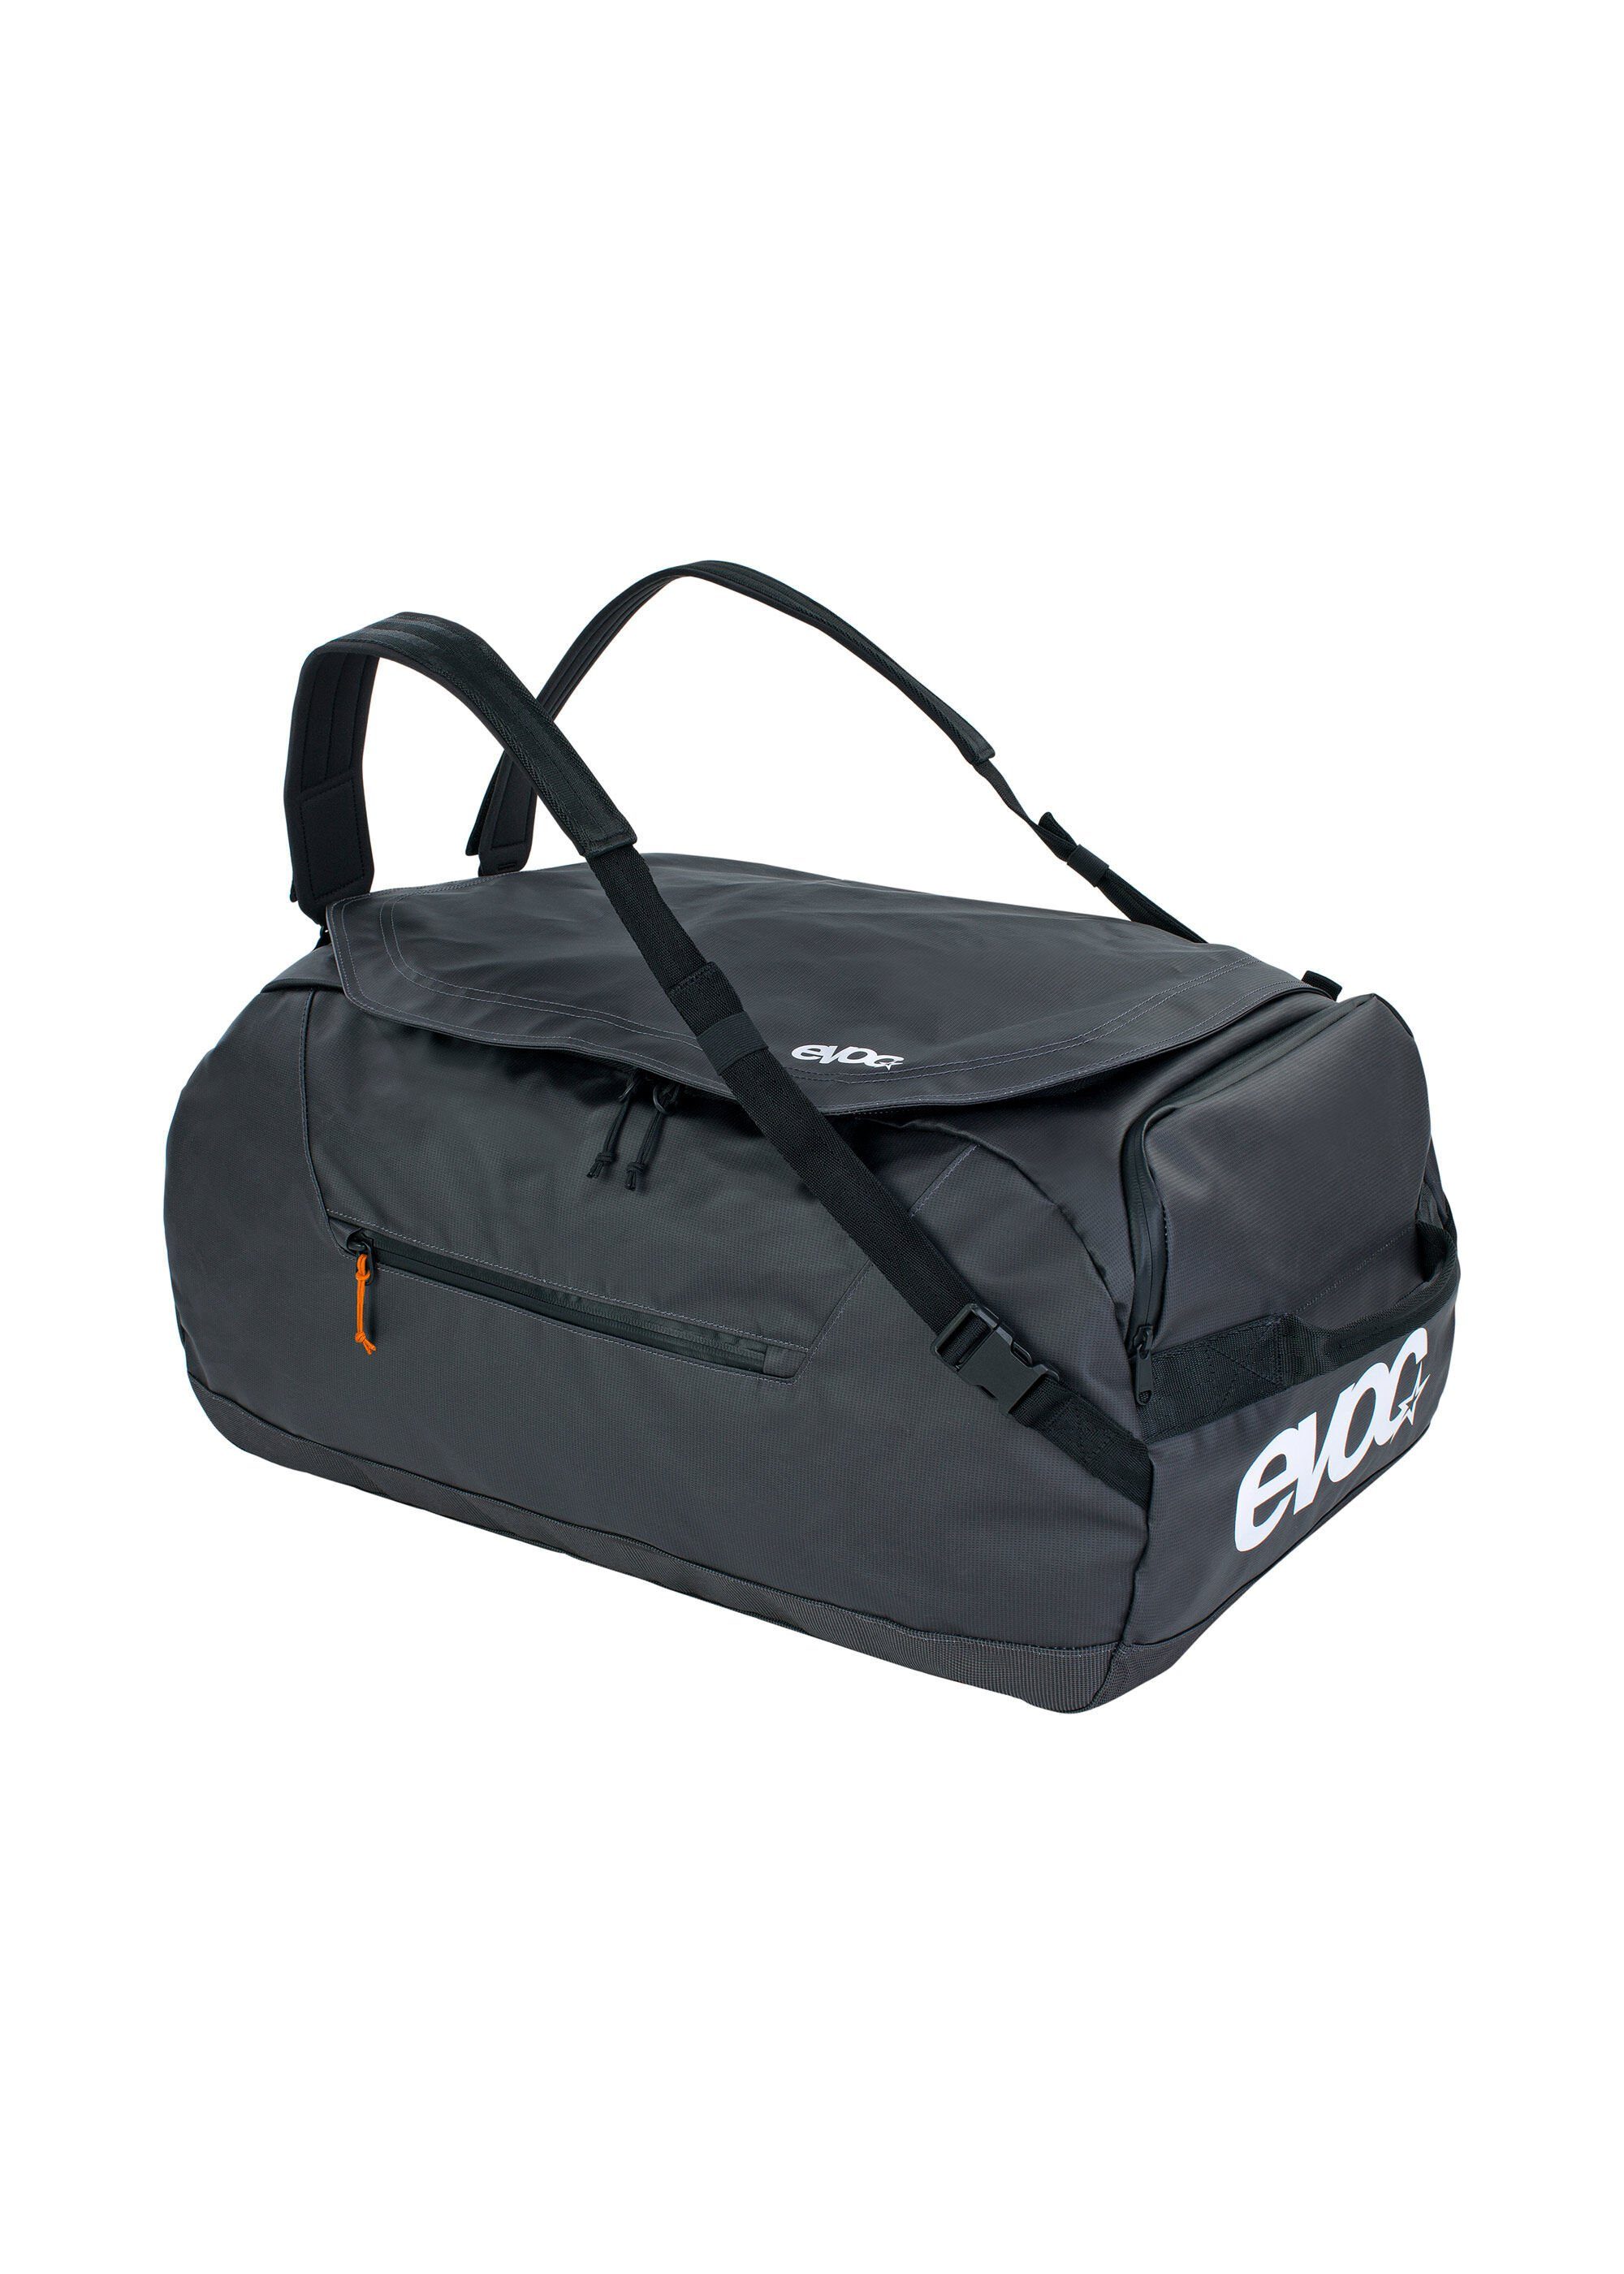 EVOC Reisetasche, aus wasserresistentem Material schwarz | Reisetaschen